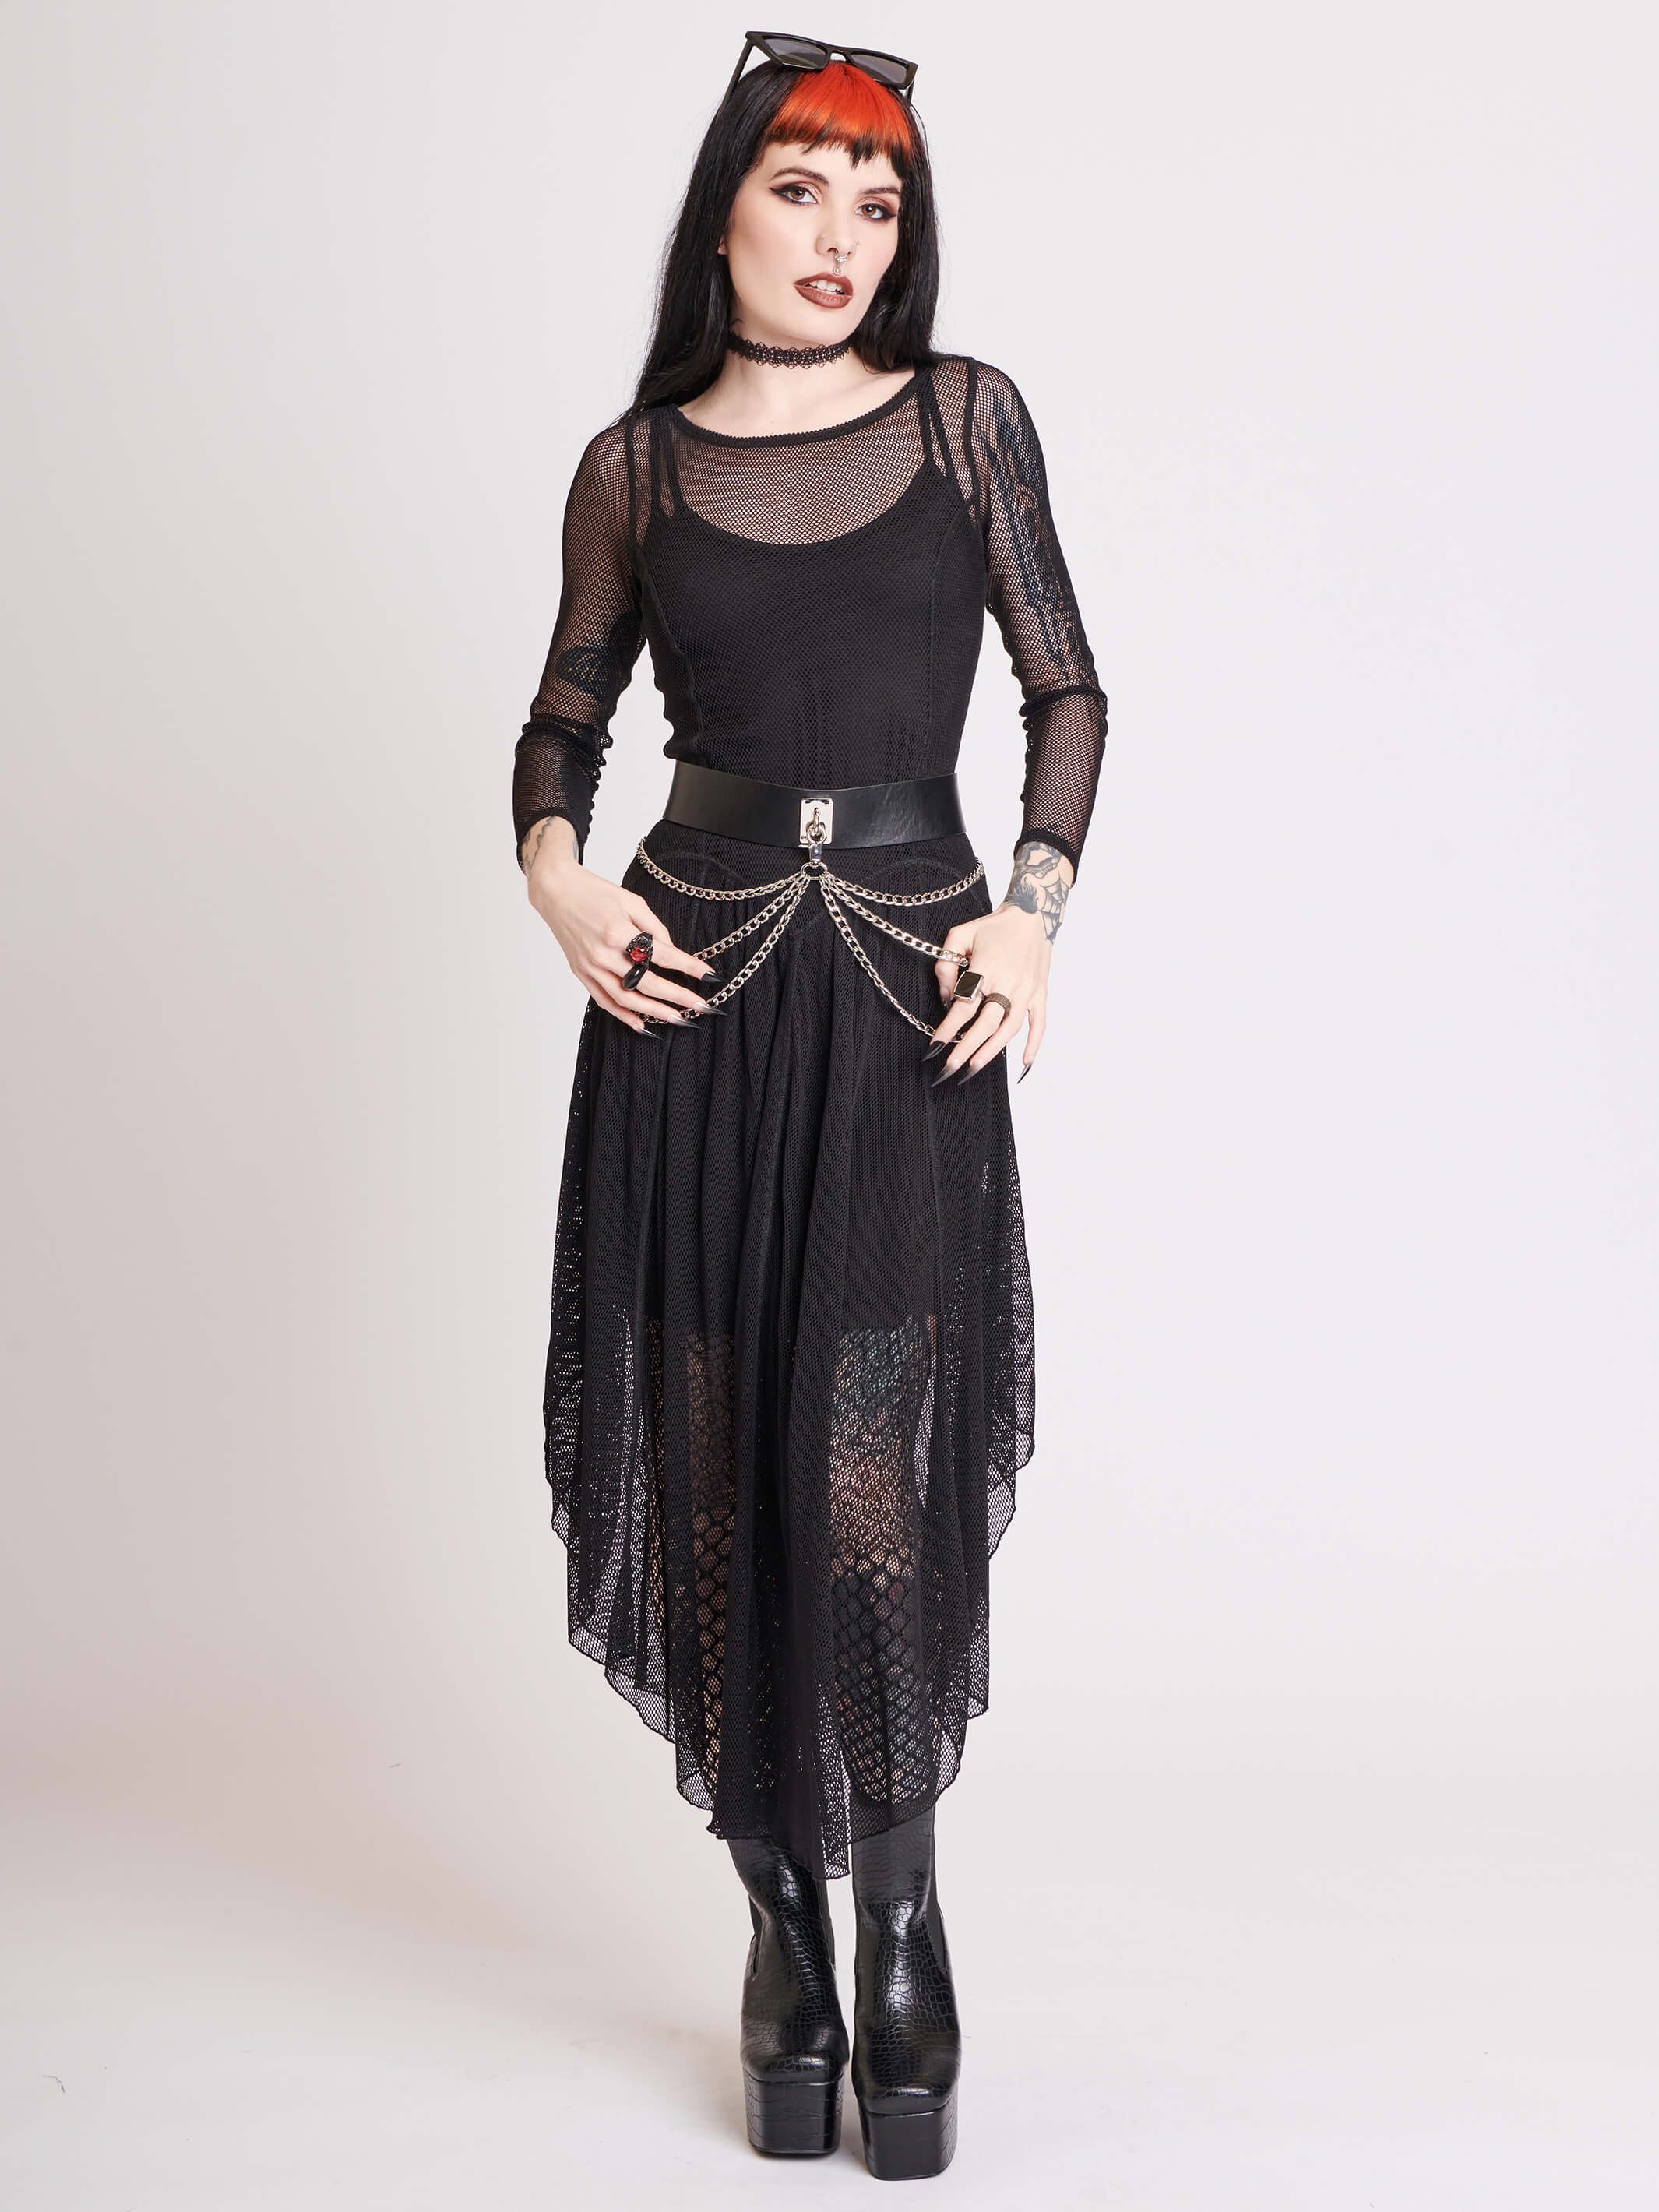 Gothic Dresses - Ladies Gothic Clothing